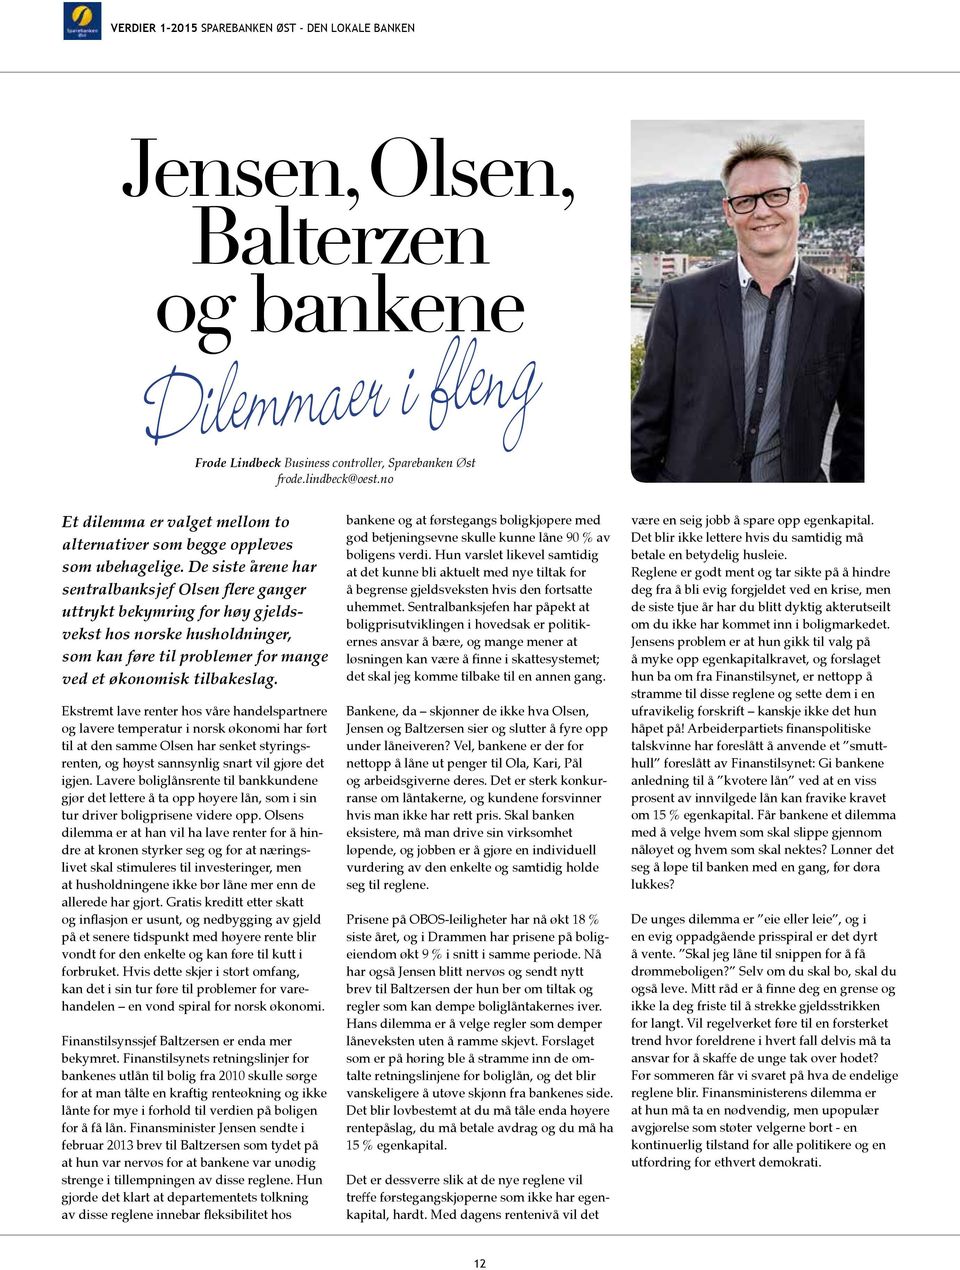 De siste årene har sentralbanksjef Olsen flere ganger uttrykt bekymring for høy gjeldsvekst hos norske husholdninger, som kan føre til problemer for mange ved et økonomisk tilbakeslag.